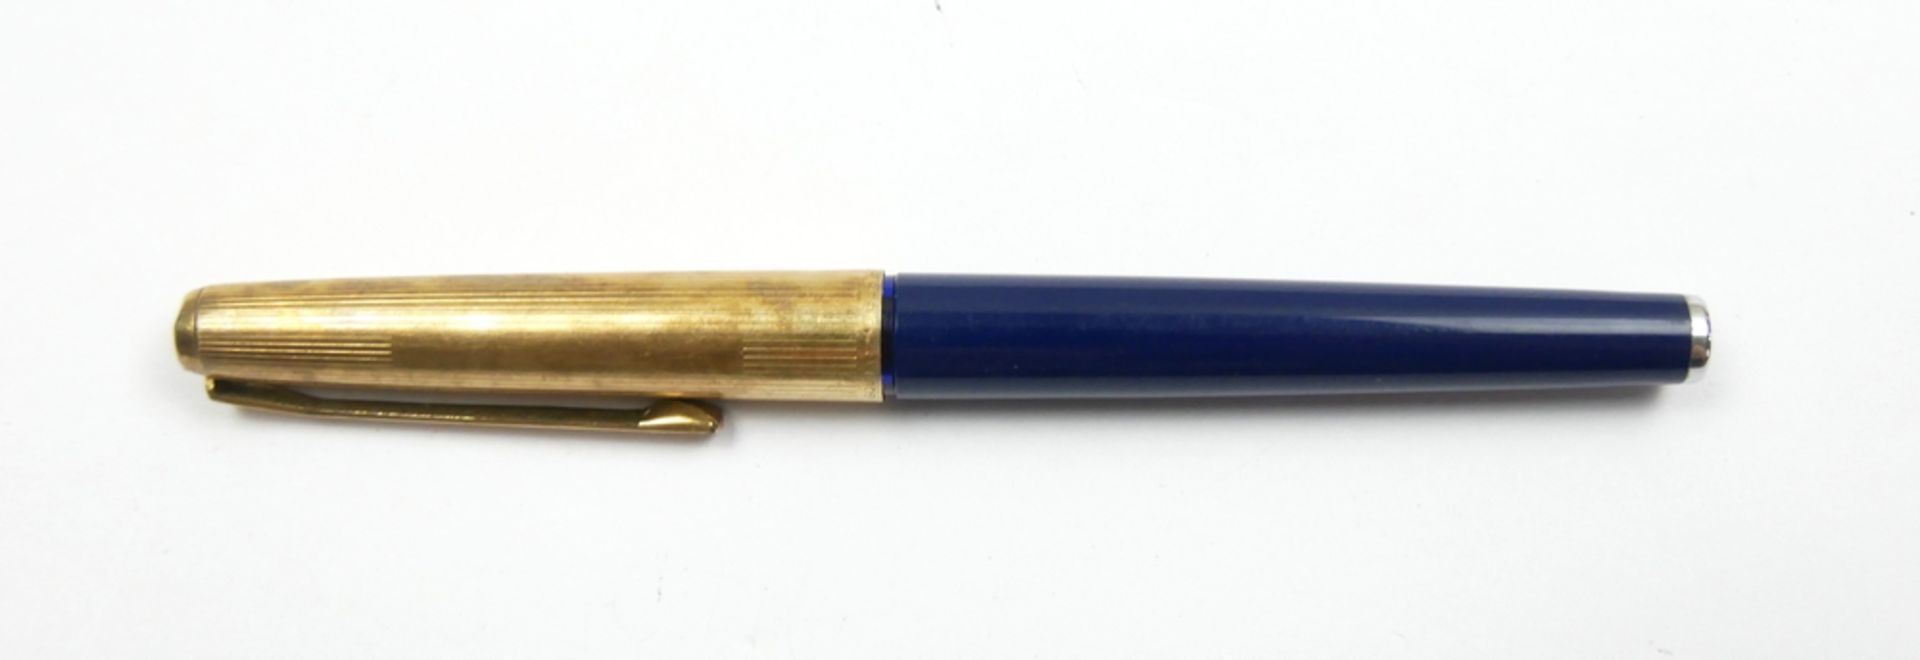 Pelikan Füllfederhalter Nr. 30 Rolled Gold 1965-70er Jahre, gebraucht aus Auflösung!